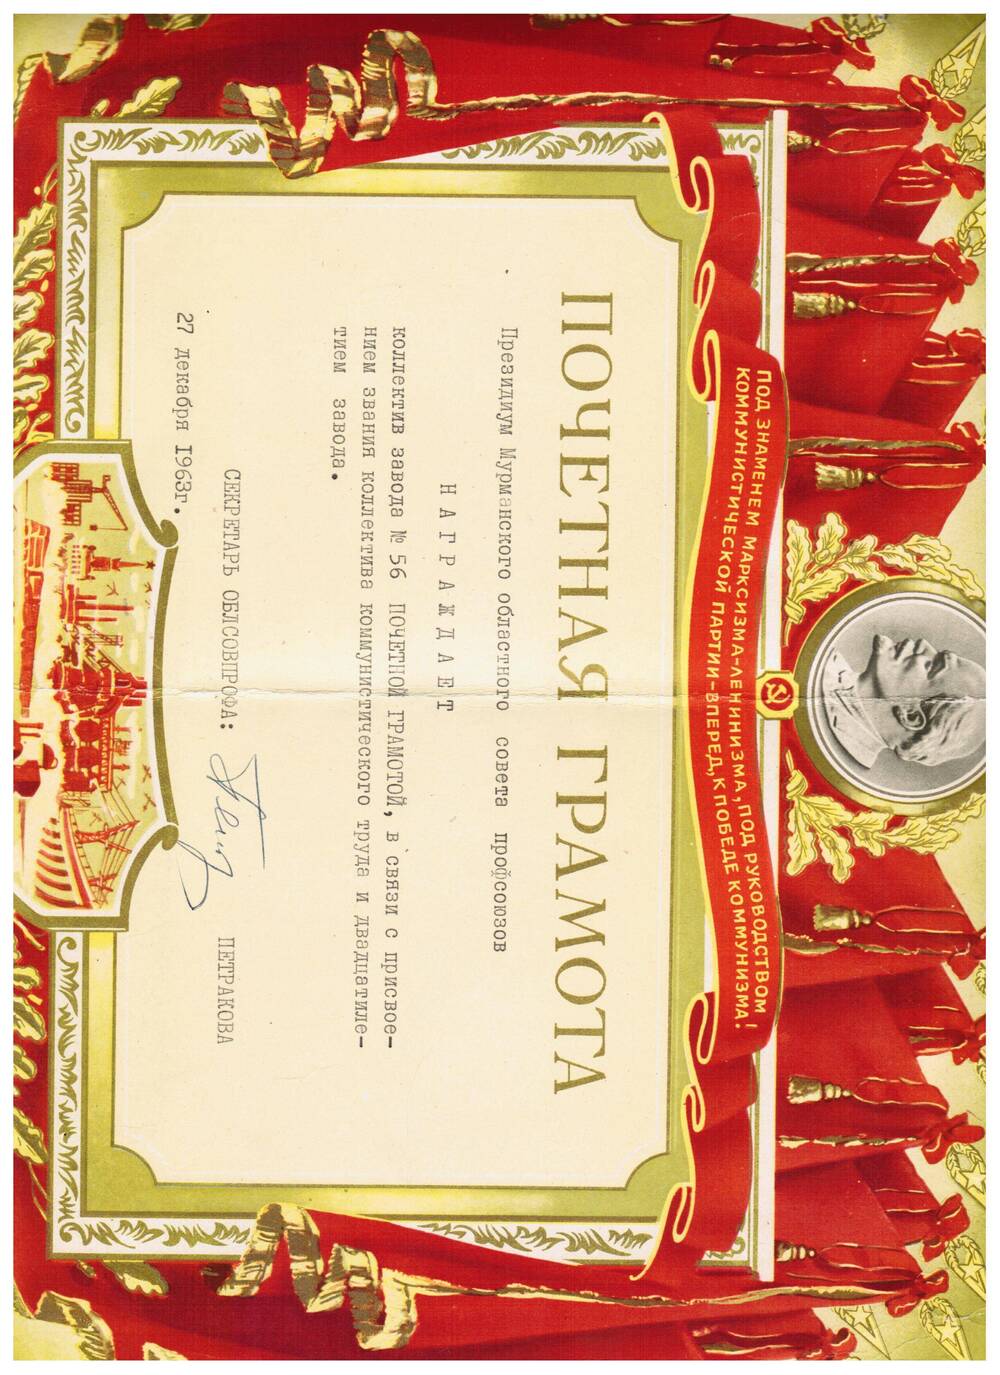 Почетная грамота заводу №56 в связи с присвоением звания “Коллектив коммунистического труда”